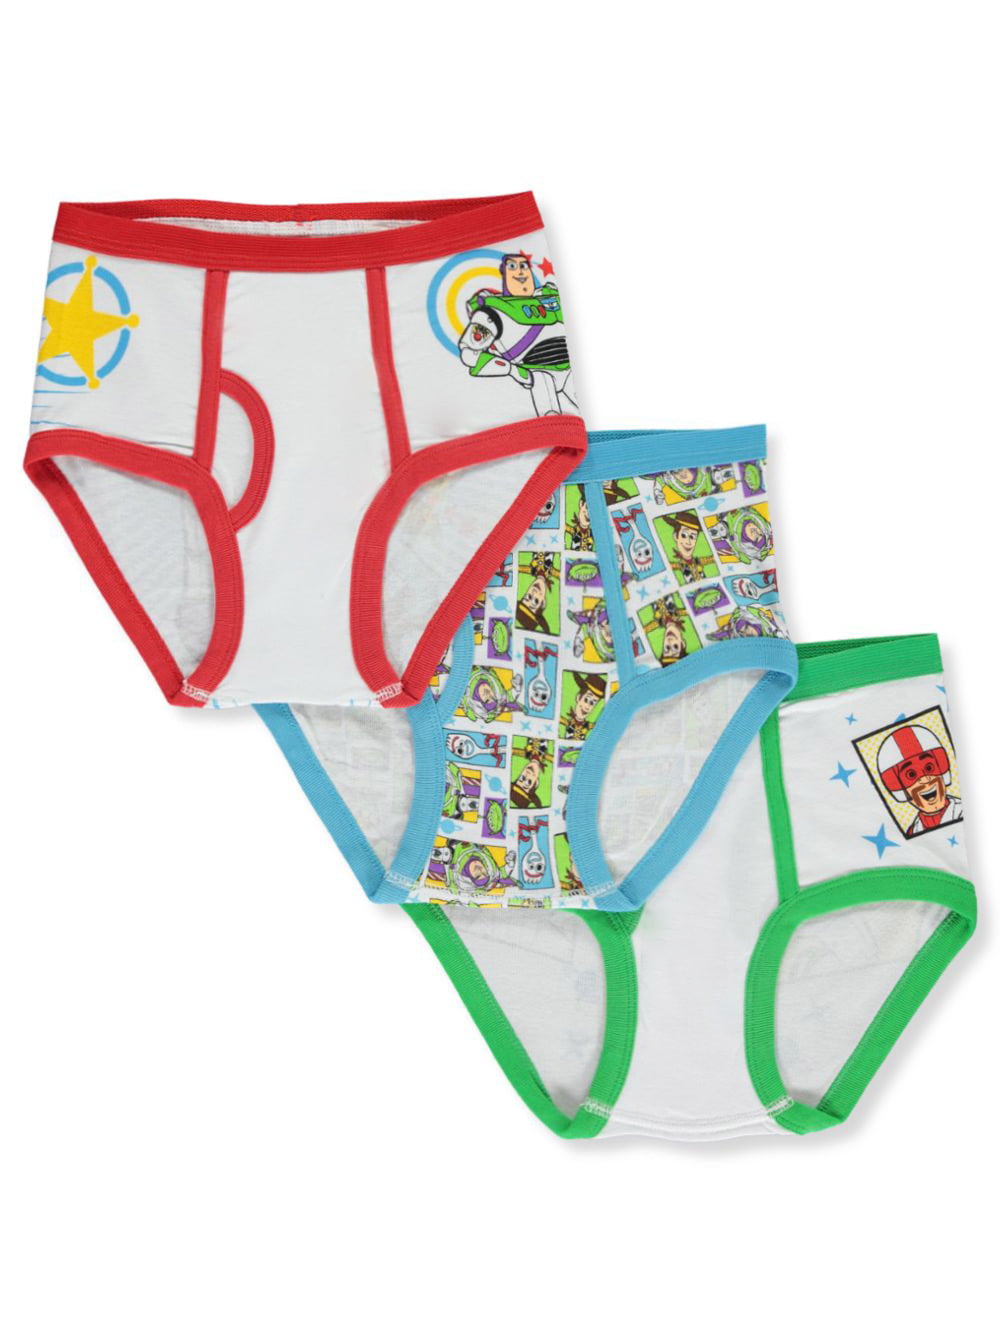 Disney Pixar Toy Story Boys  3 Pack Briefs Underwear 100% cotton Age 5 6 7 8 